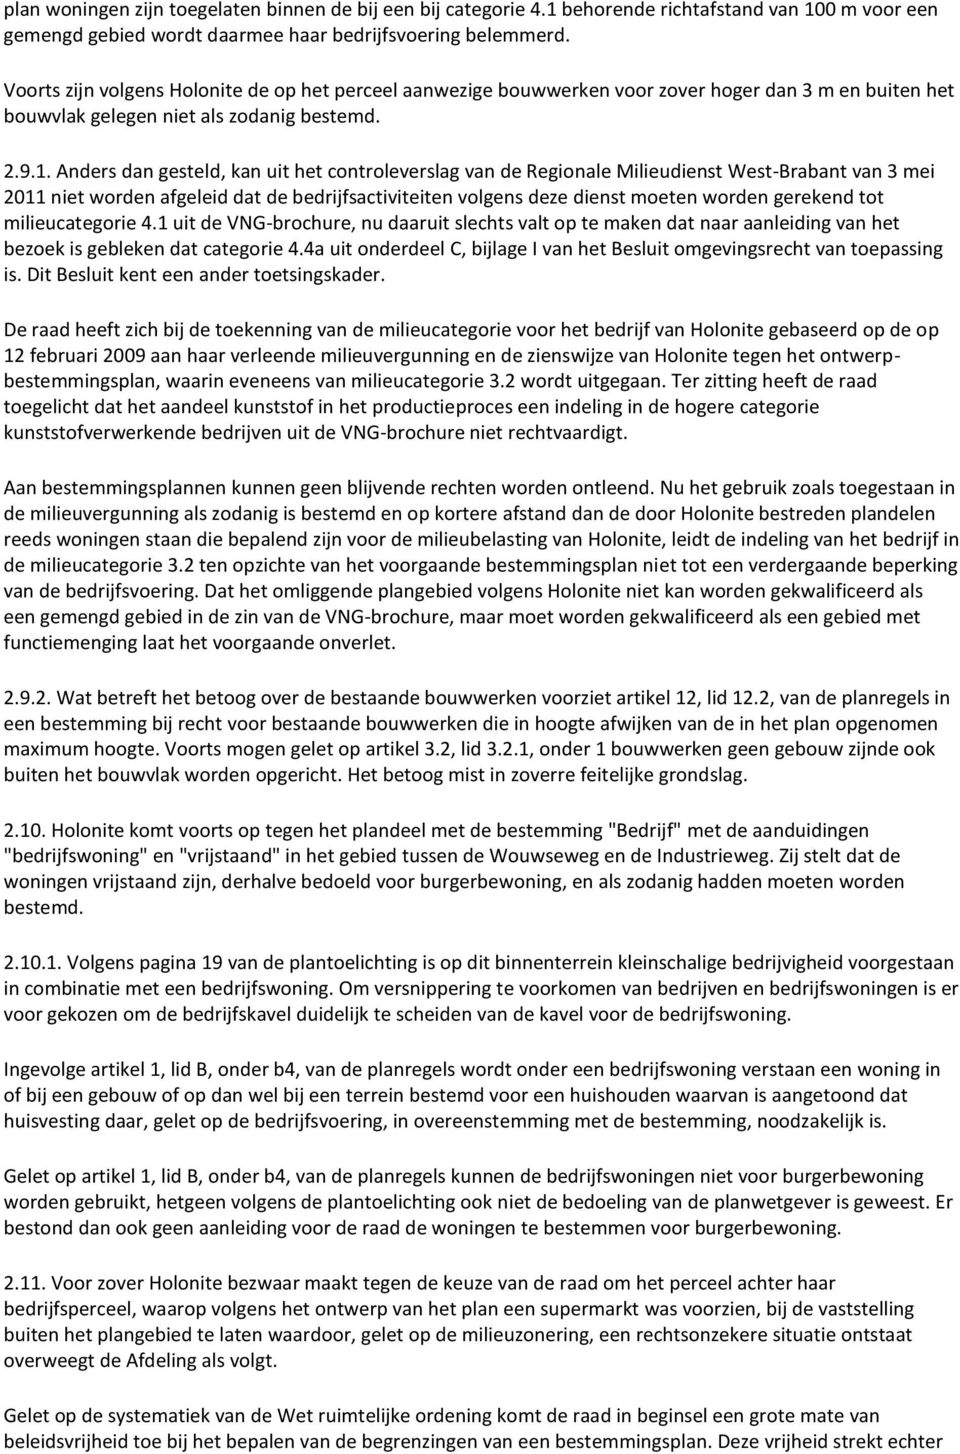 Anders dan gesteld, kan uit het controleverslag van de Regionale Milieudienst West-Brabant van 3 mei 2011 niet worden afgeleid dat de bedrijfsactiviteiten volgens deze dienst moeten worden gerekend